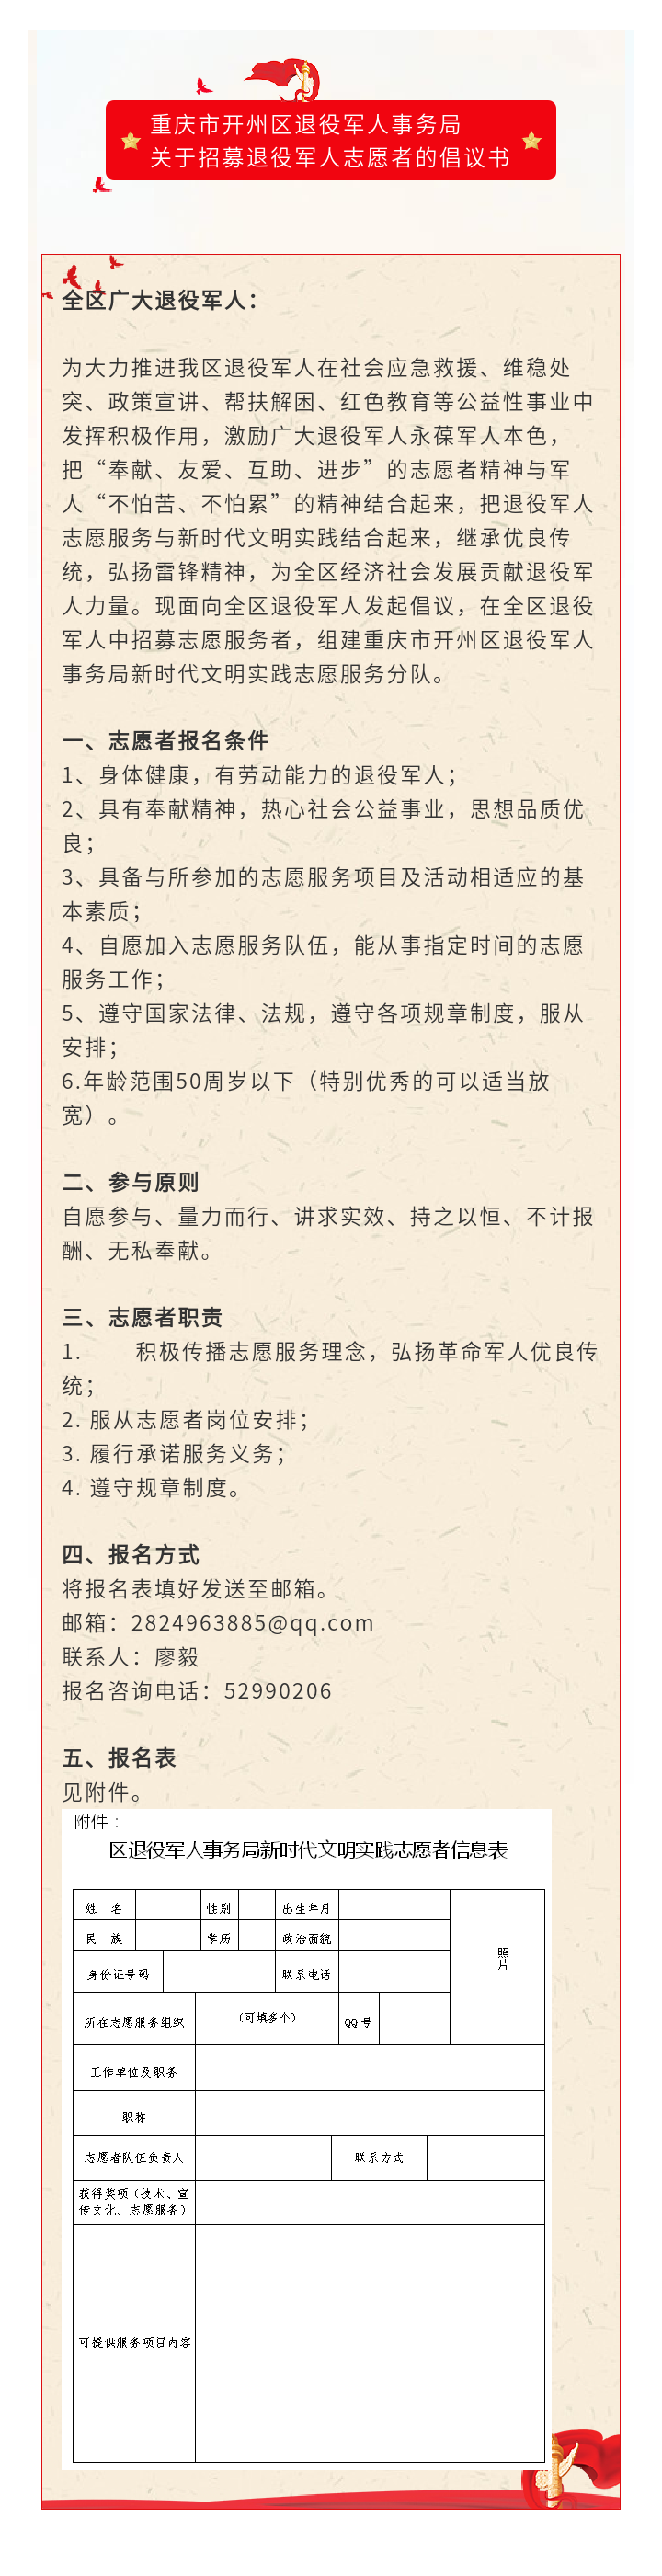 重庆市开州区退役军人事务局关于招募退役军人志愿者的倡议书【皇冠正规娱乐平台】